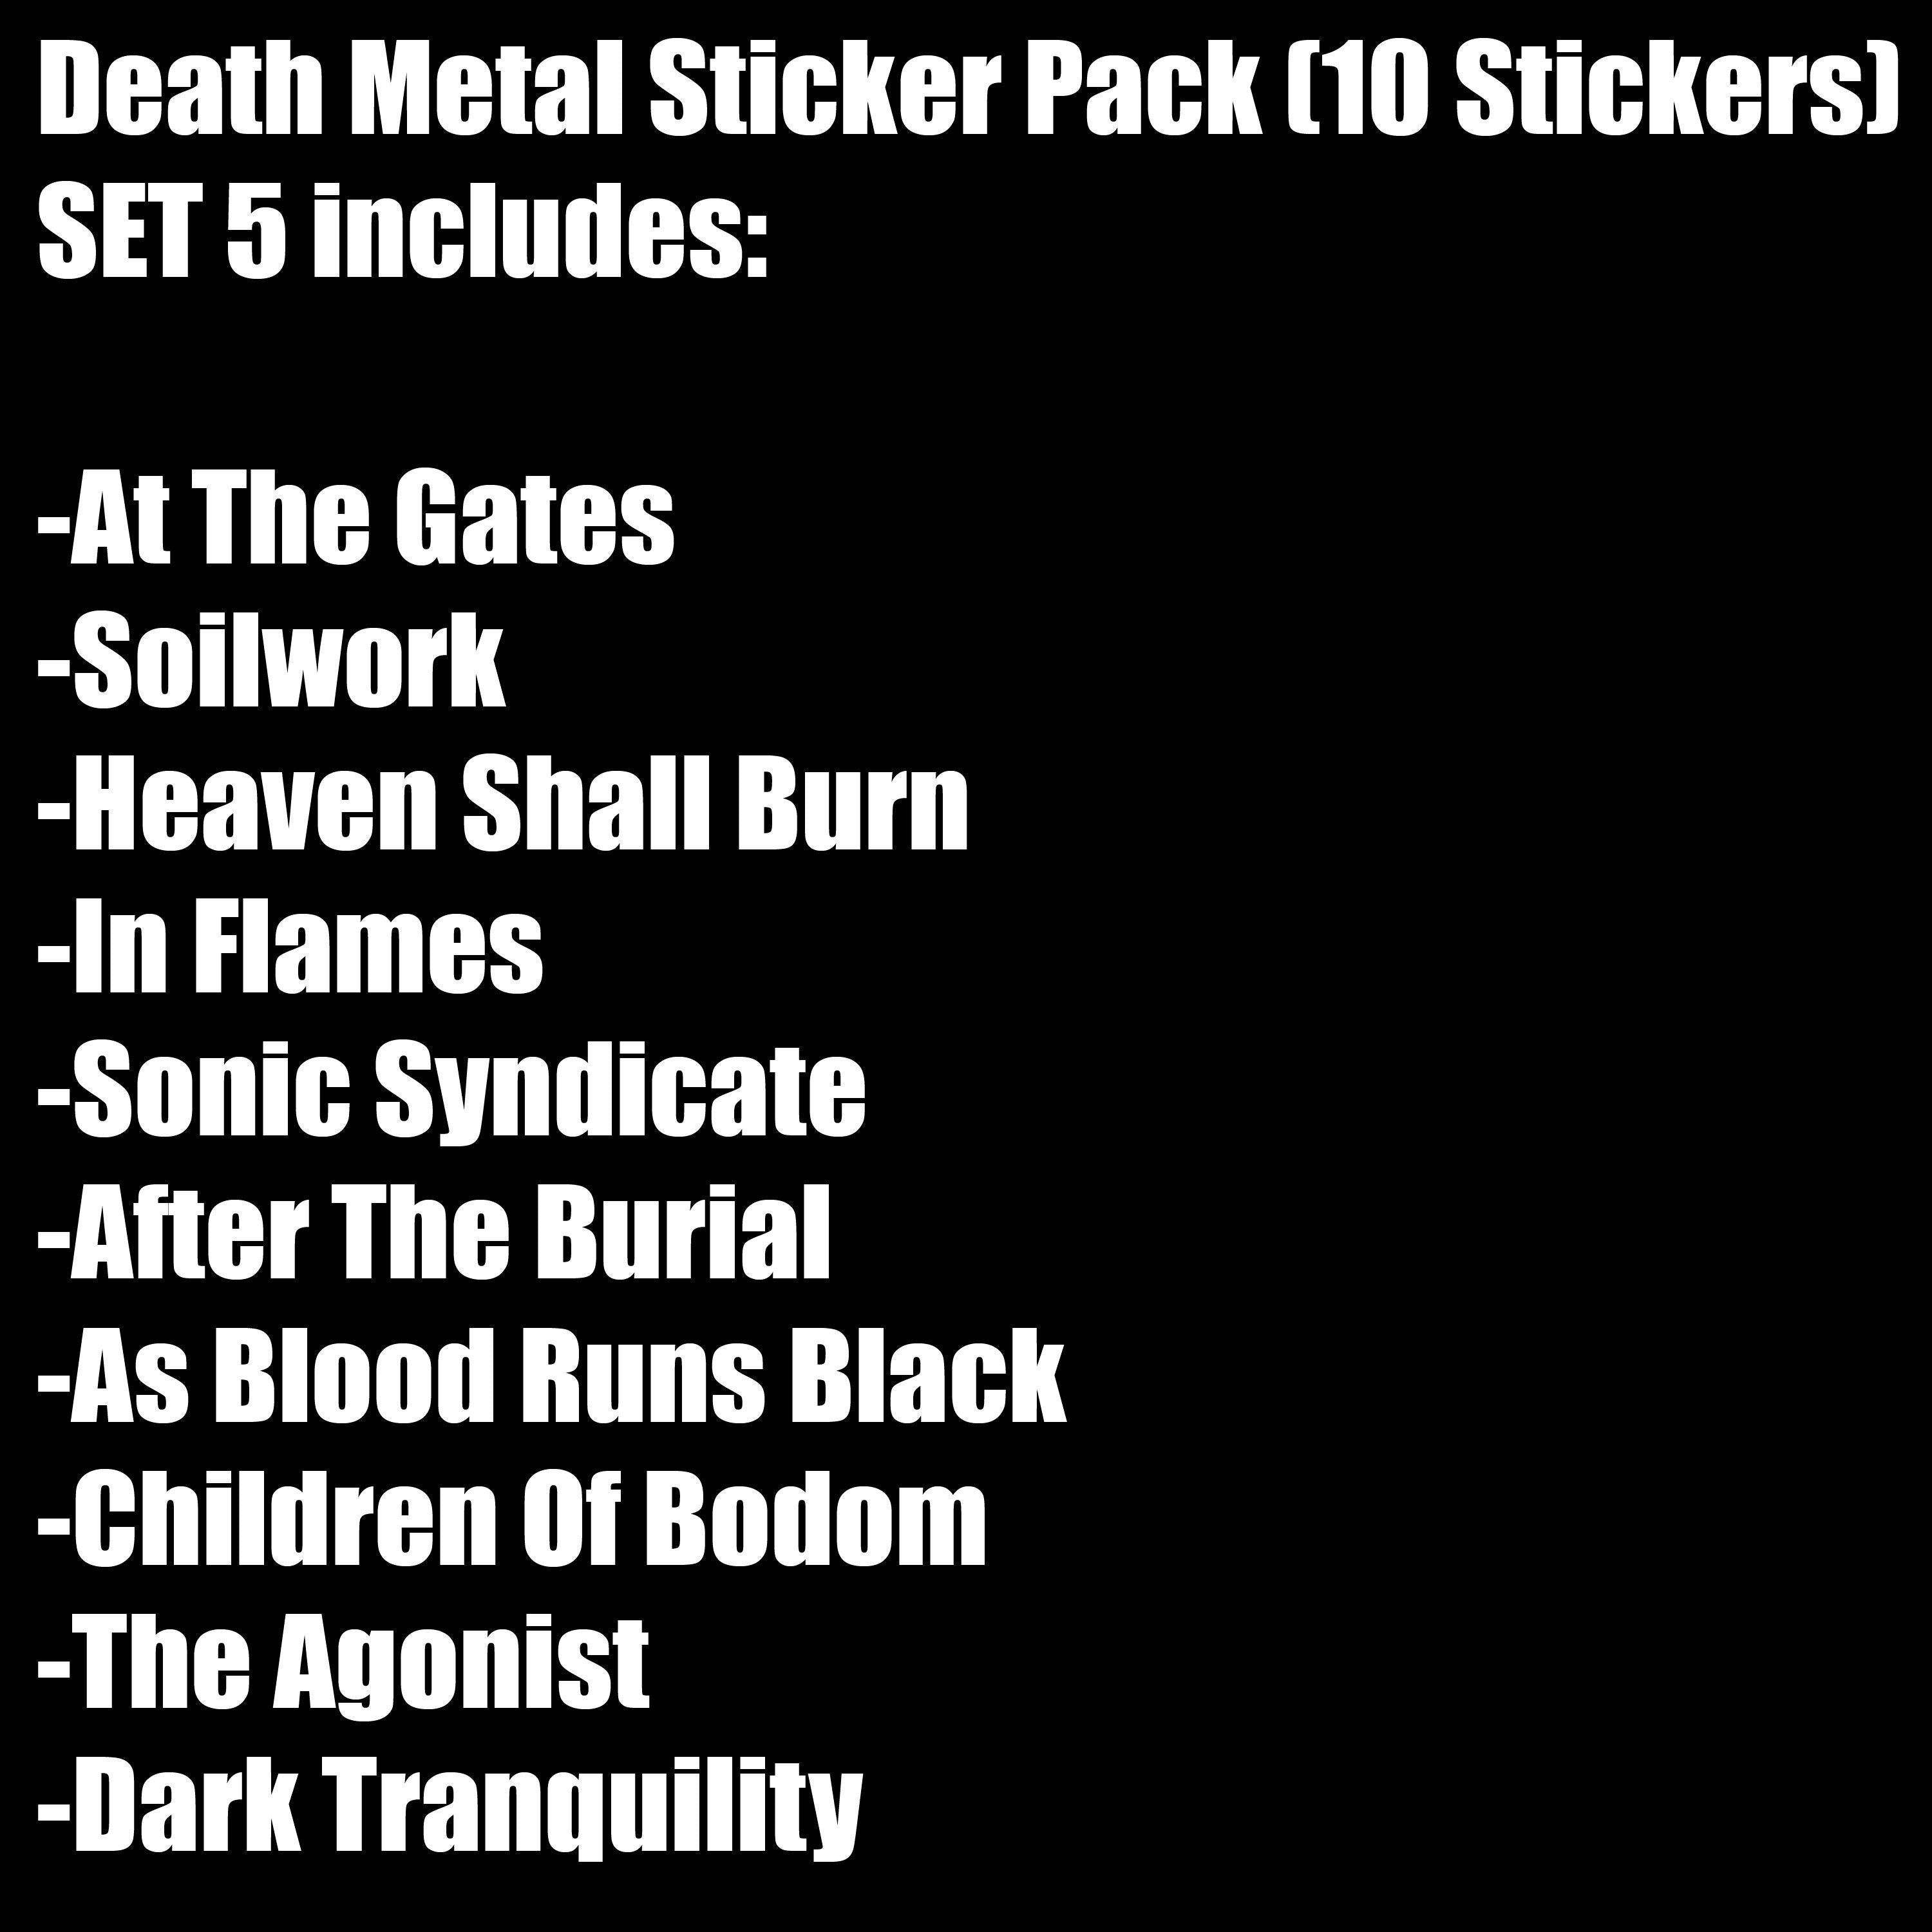 Death Metal Sticker Pack (10 Stickers) Set 5